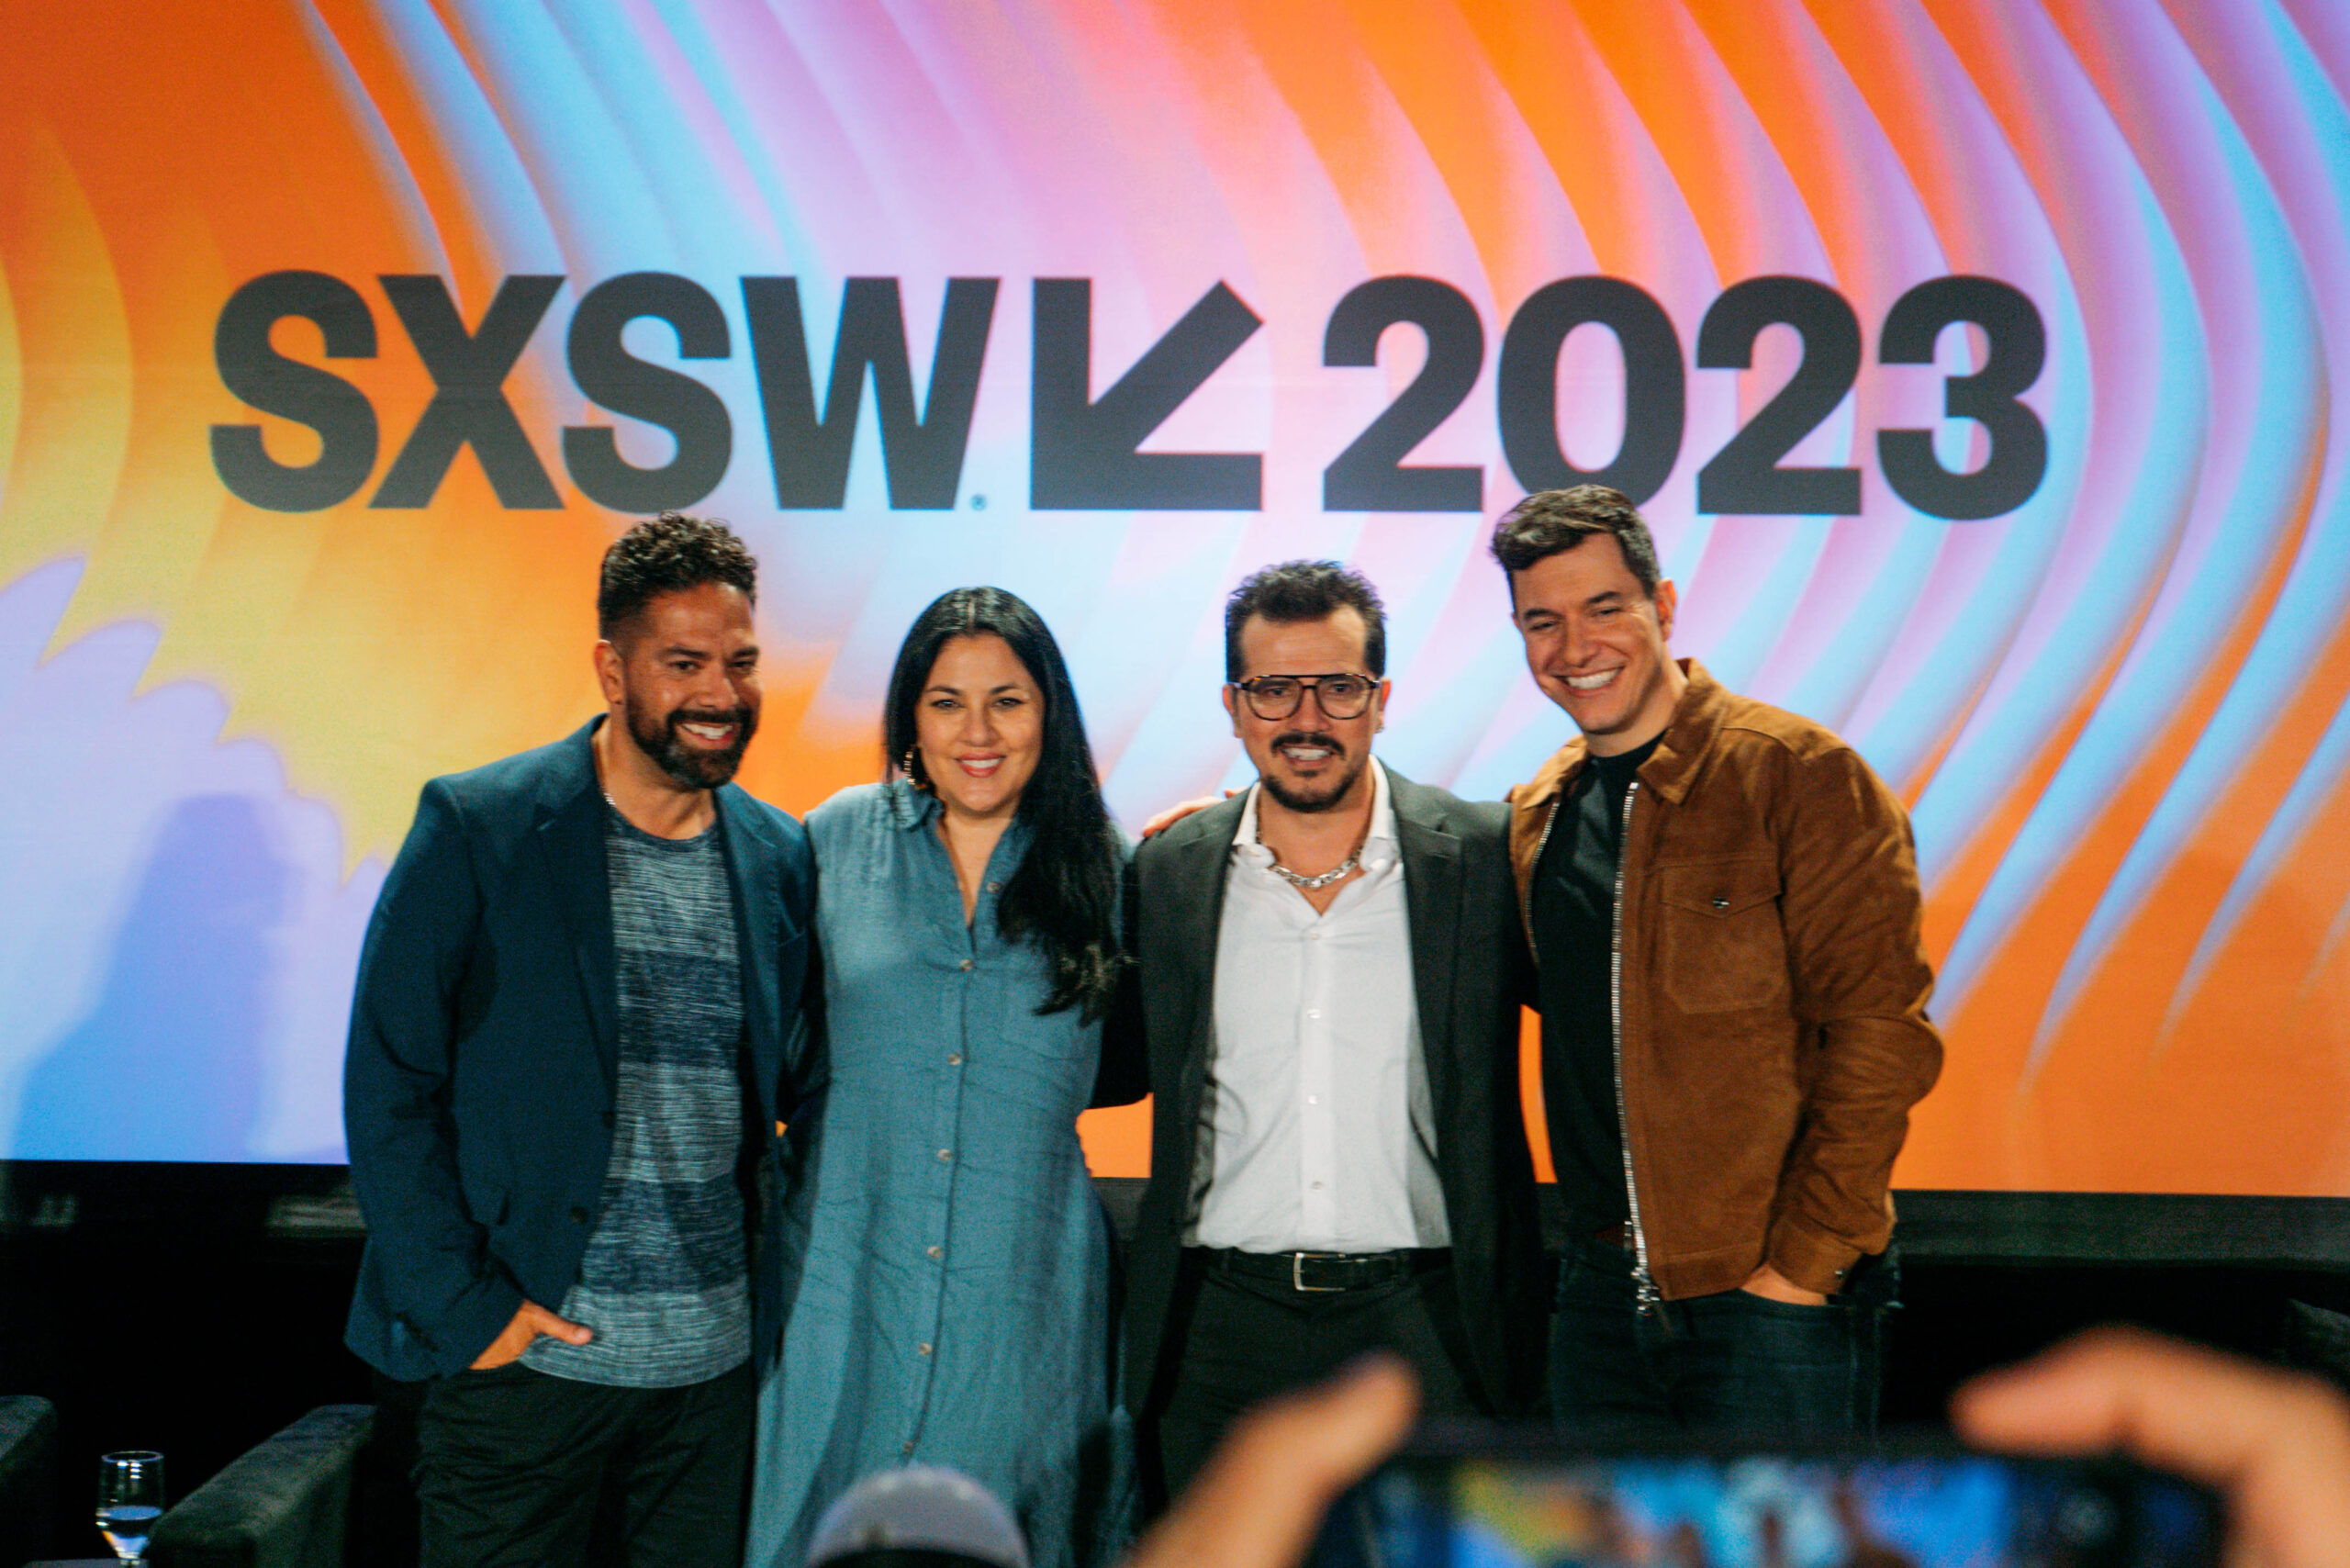 Tom Llamas, Carolina Saavedra, John Leguizamo, and Ben DeJesus at their SXSW panel. Image by Sarah M. Vasquez